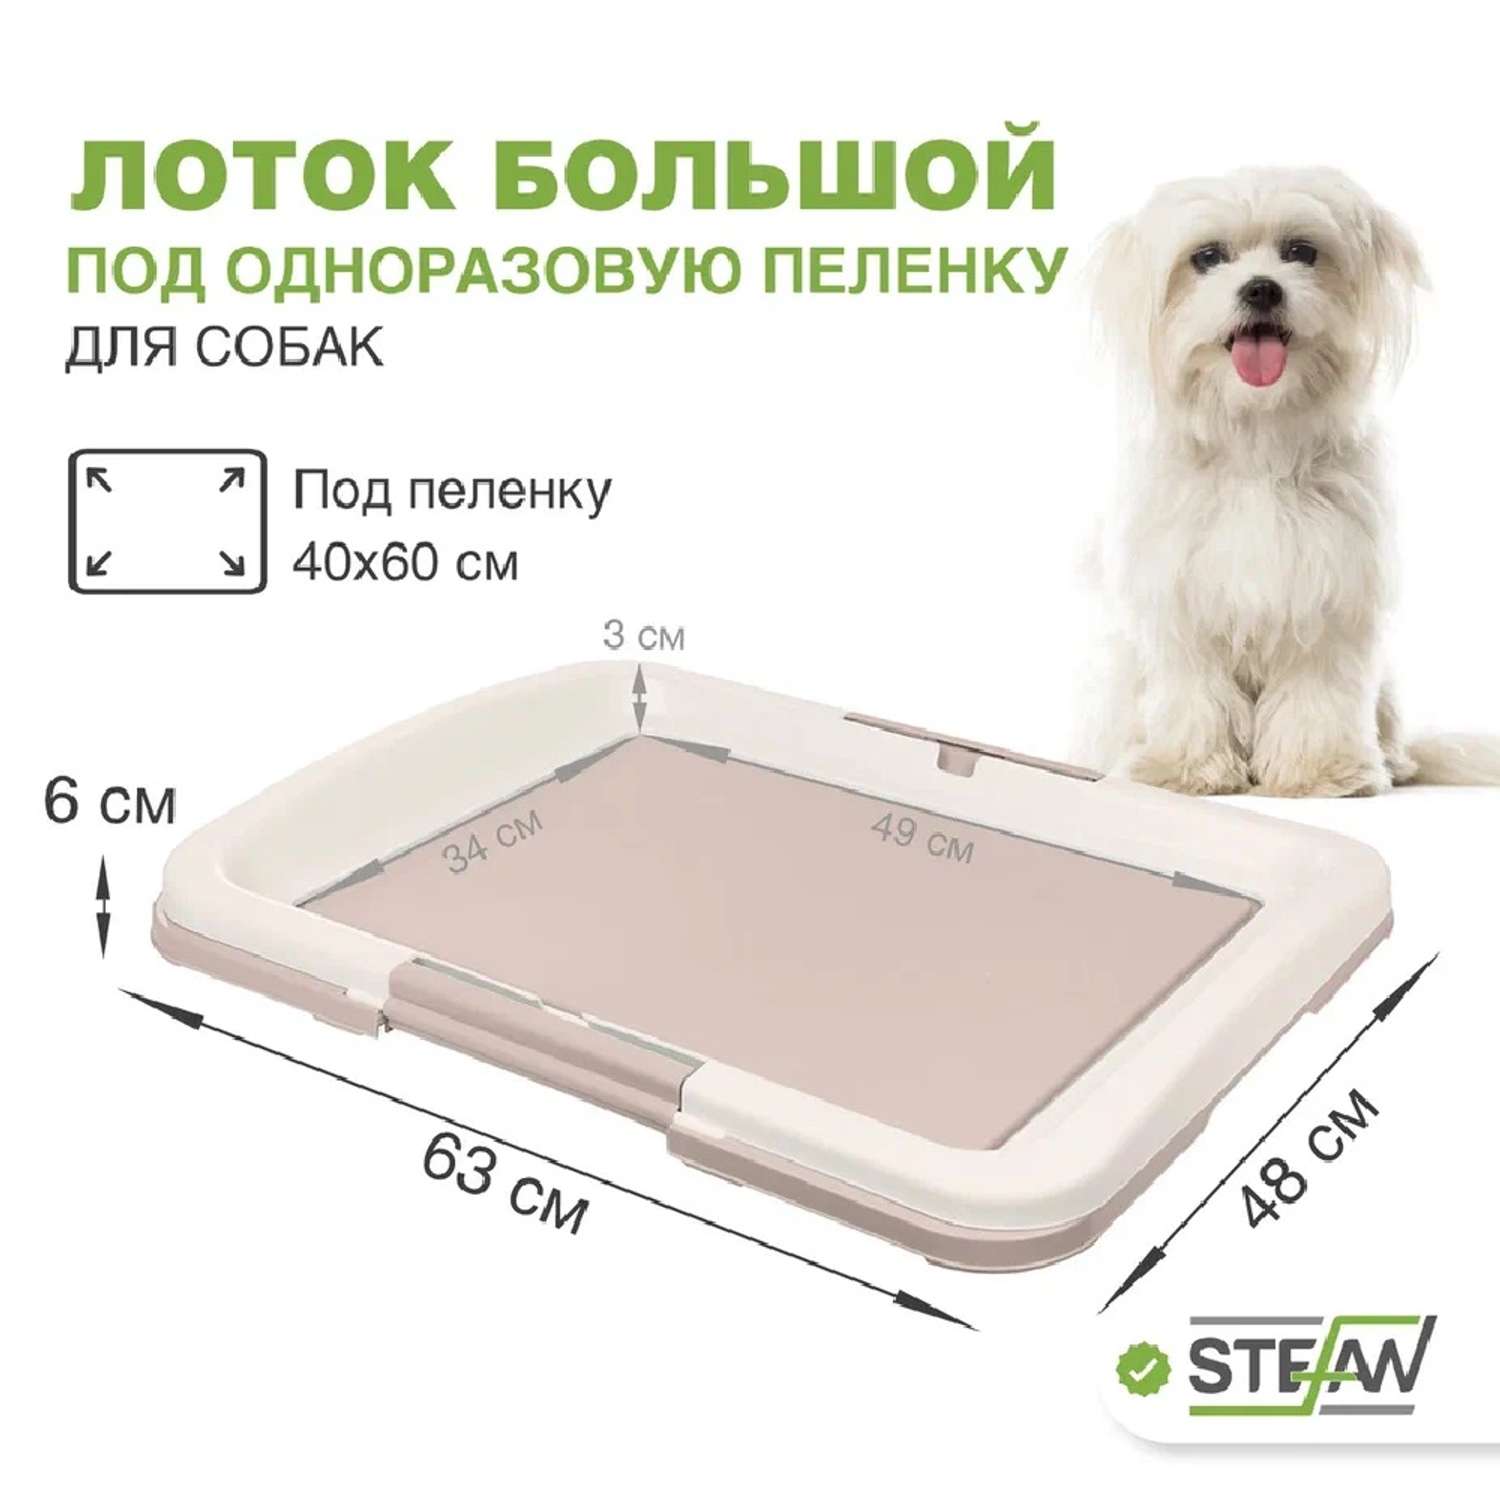 Туалет лоток для собак Stefan под одноразовую пеленку большой L 63x49х6 см бежевый - фото 1